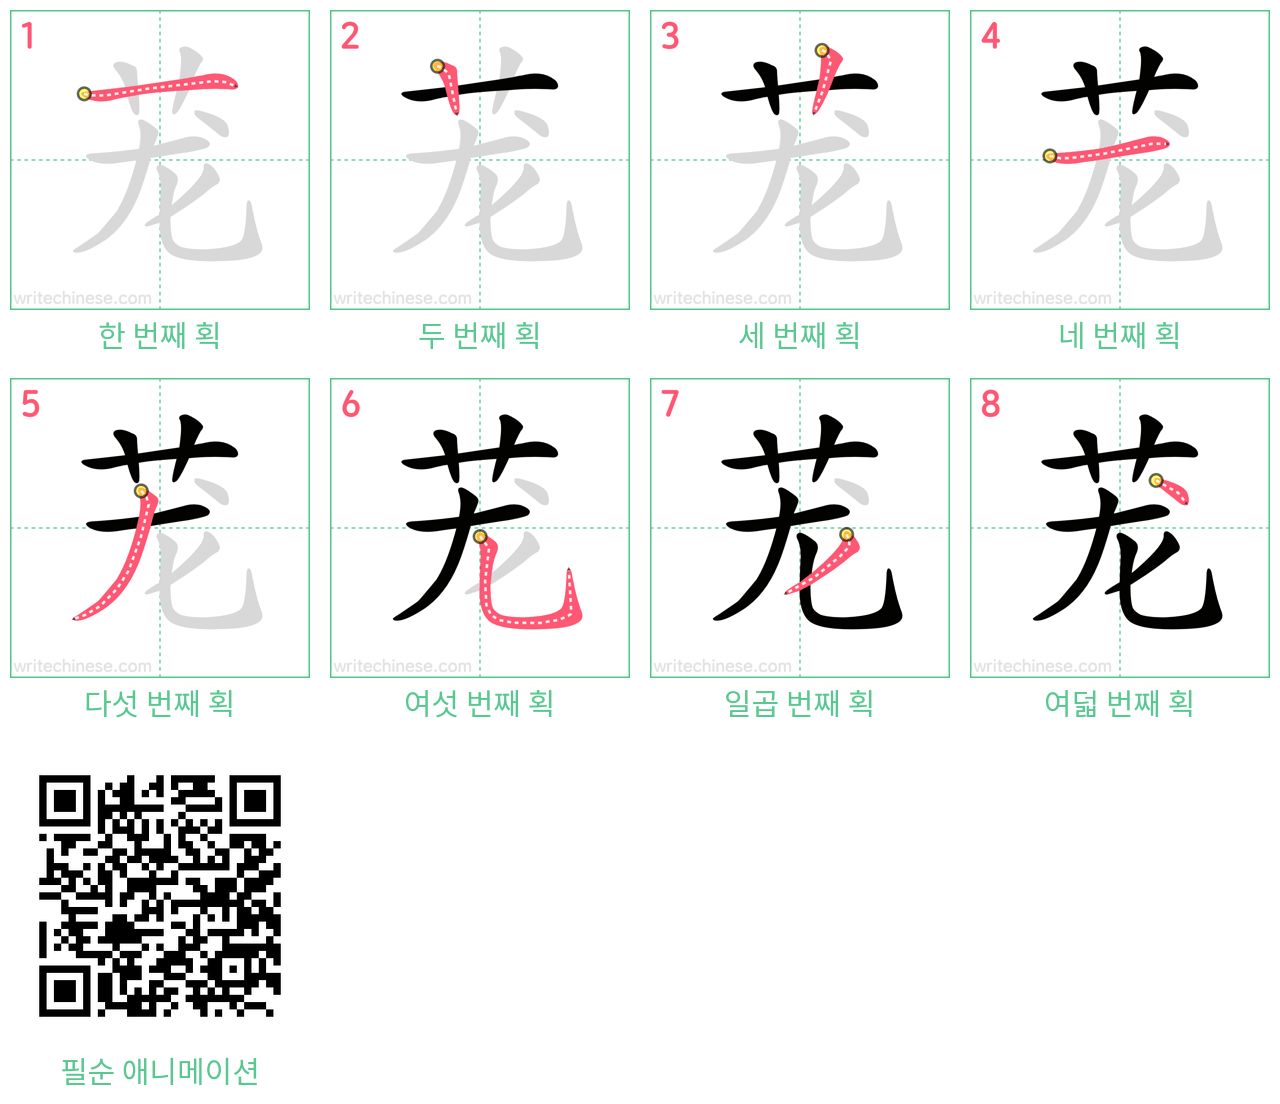 茏 step-by-step stroke order diagrams